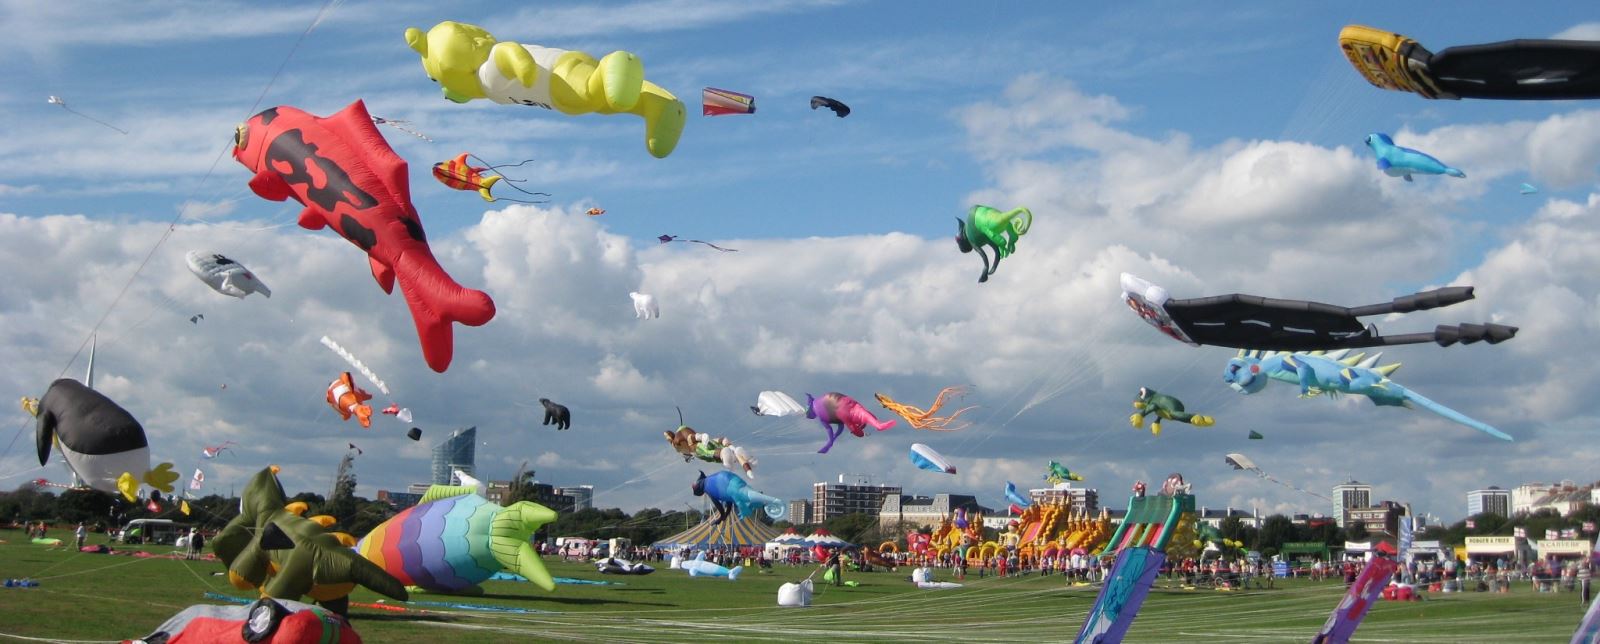 Novelty kites flying over Southsea Common for the International Kite Festival